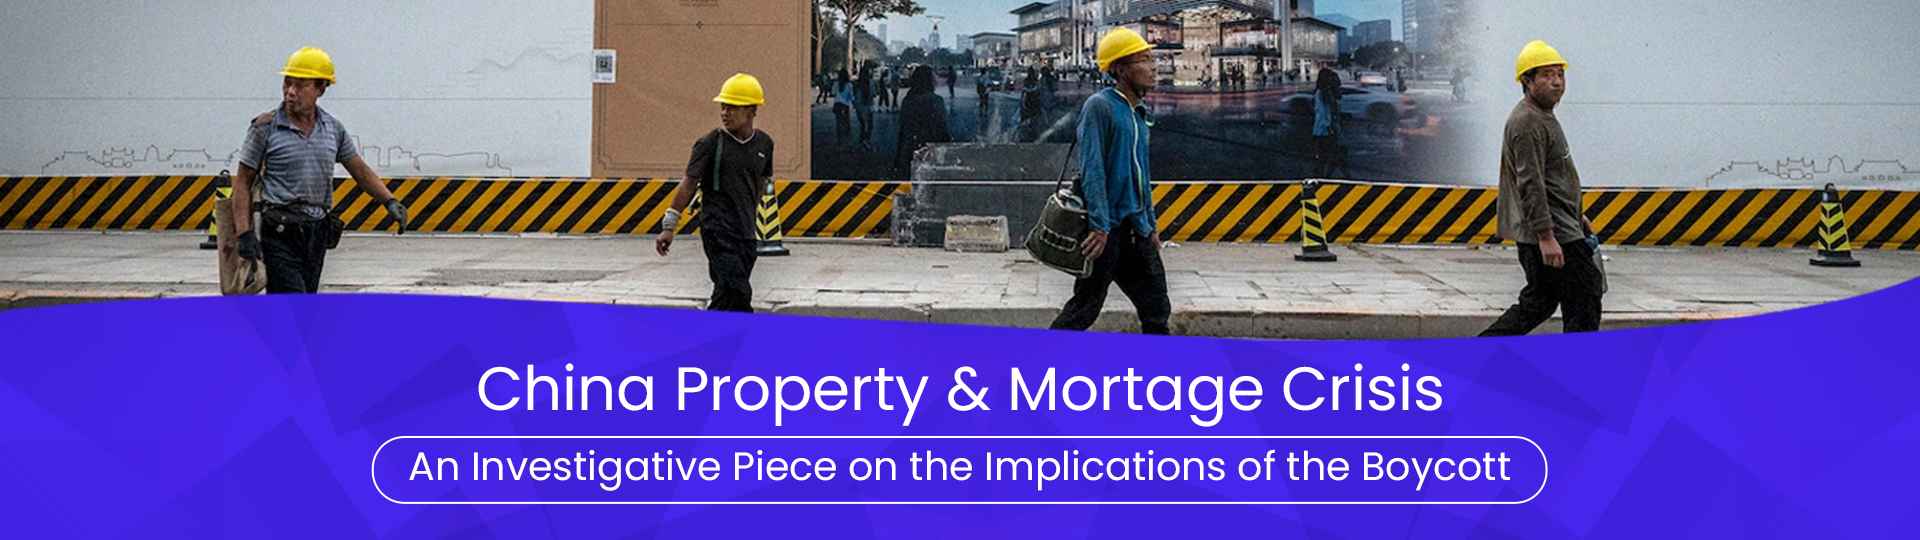 China Property & Mortgage Crisis